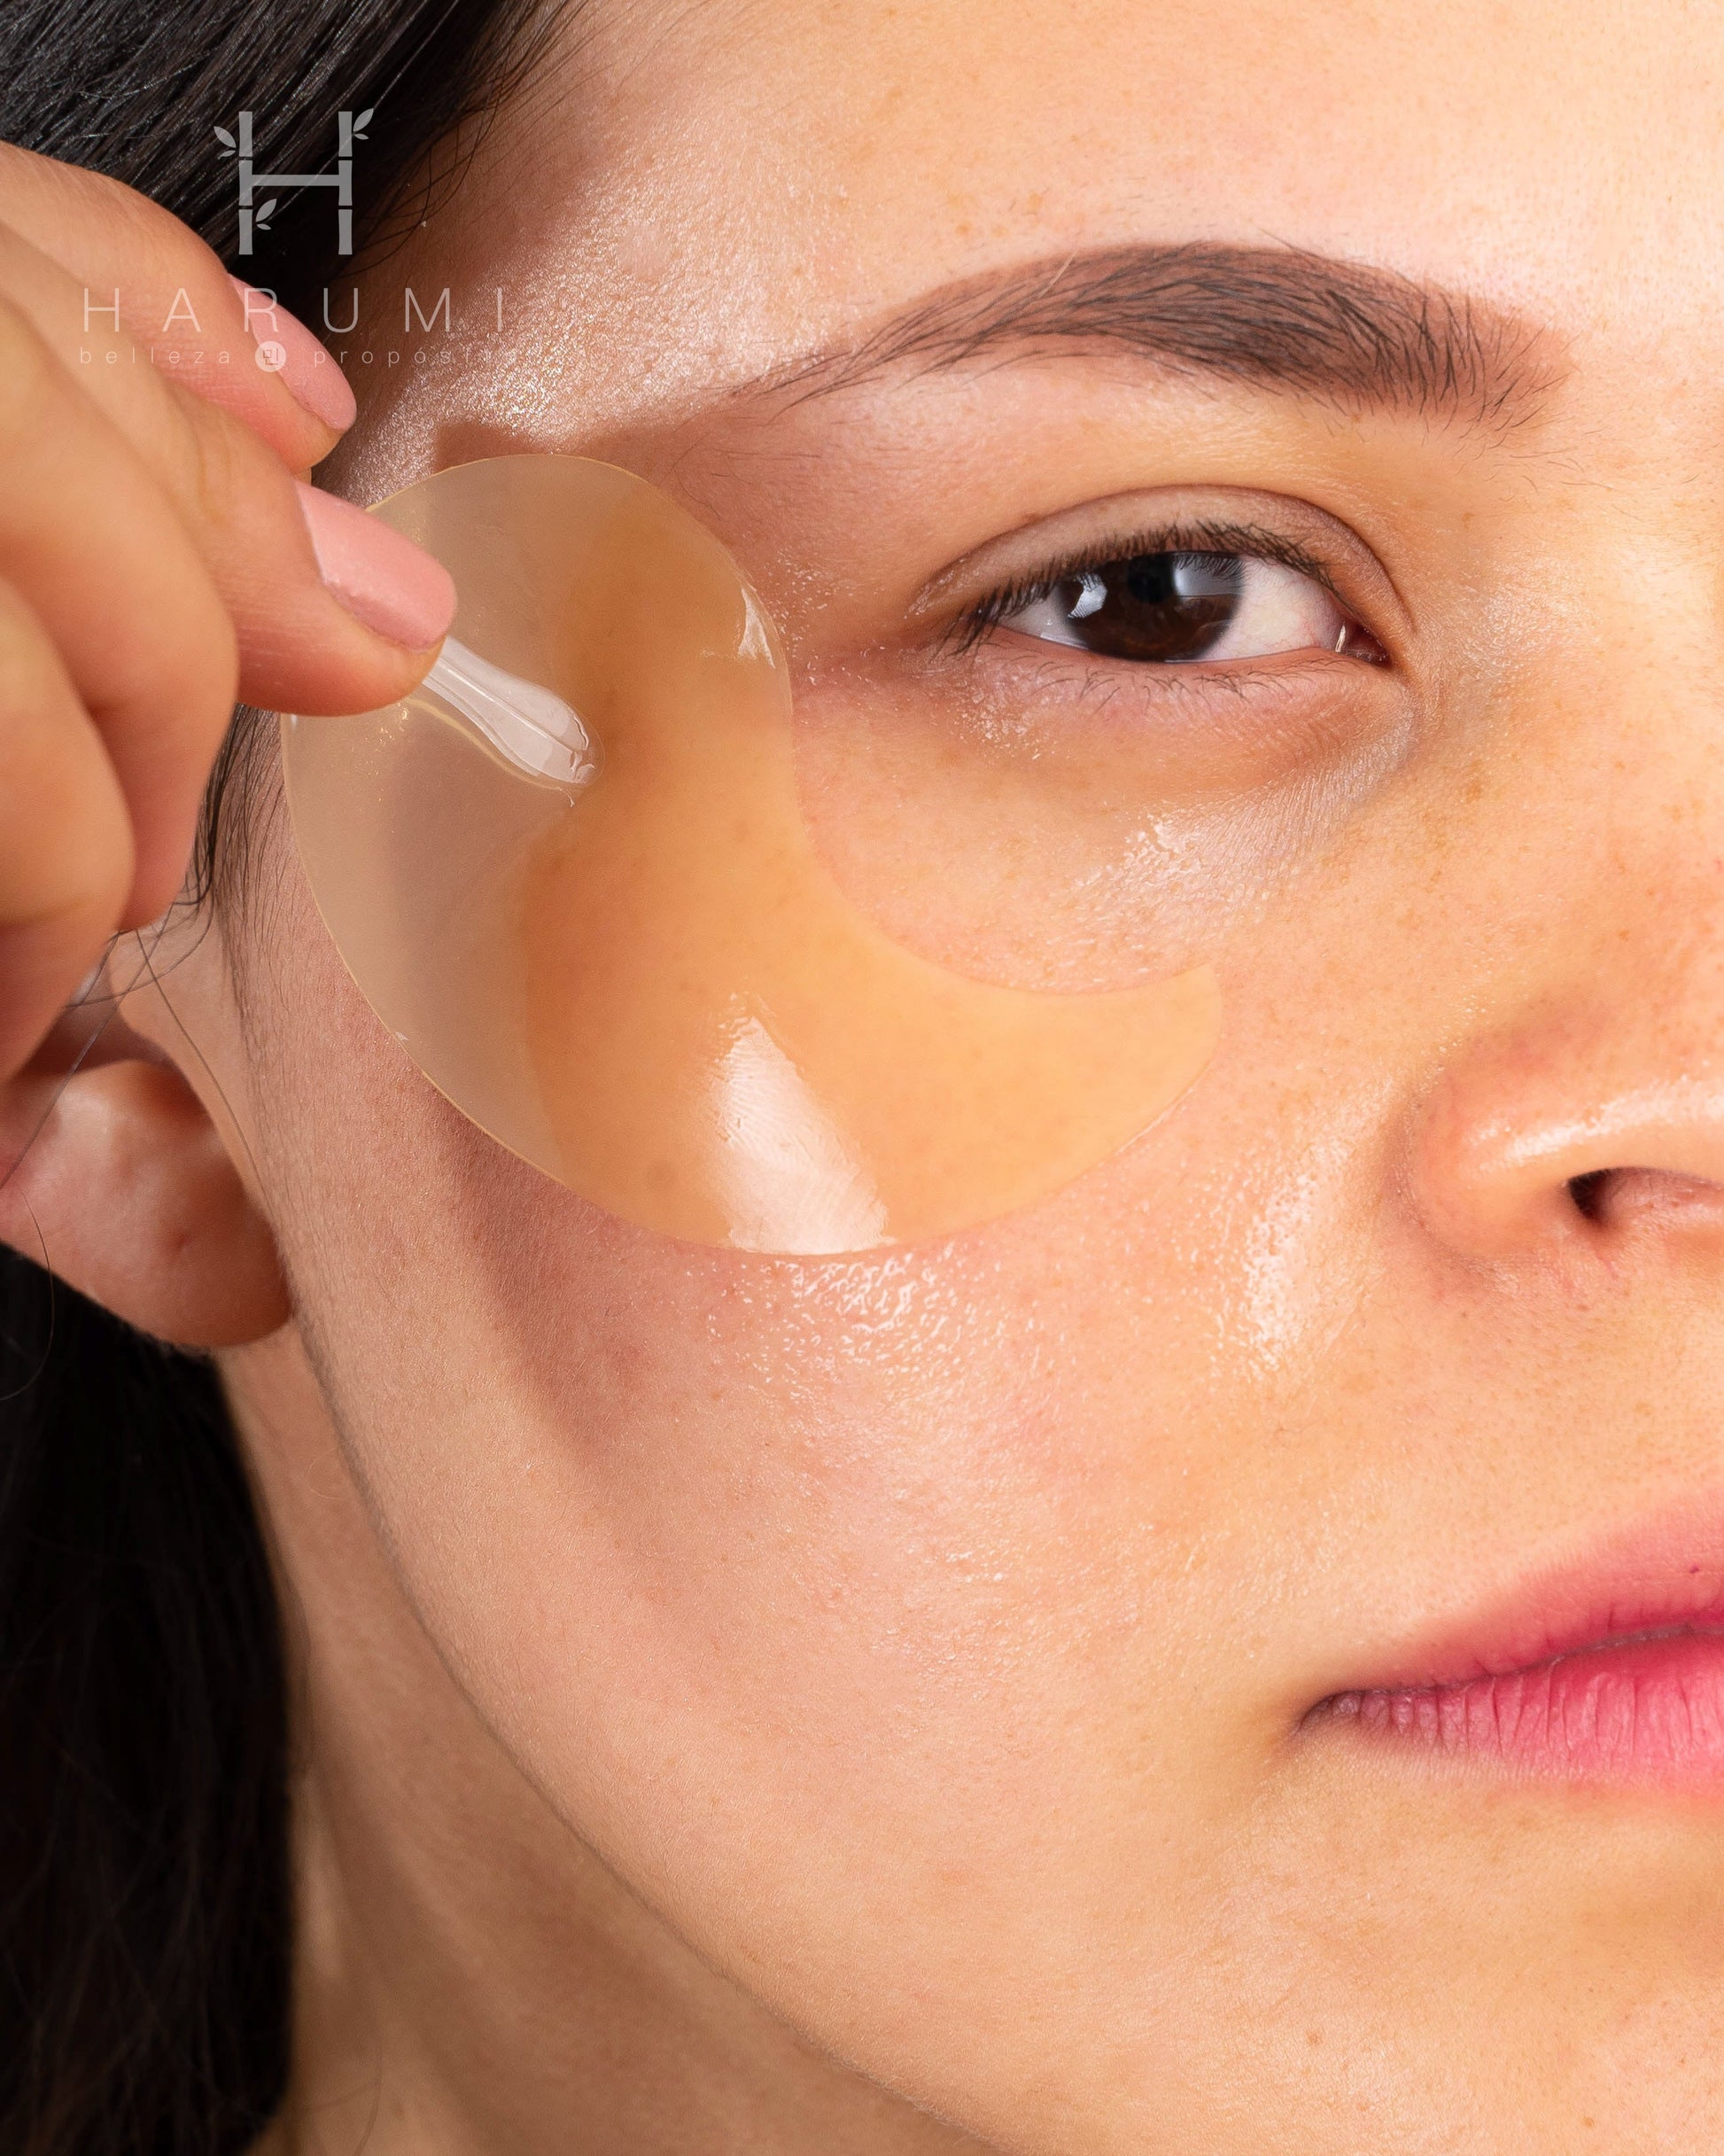 Eyenlip Salmon Oil & Peptide Hydrogel Eye Patch Skincare maquillaje productos de belleza coreanos en Colombia kbeauty